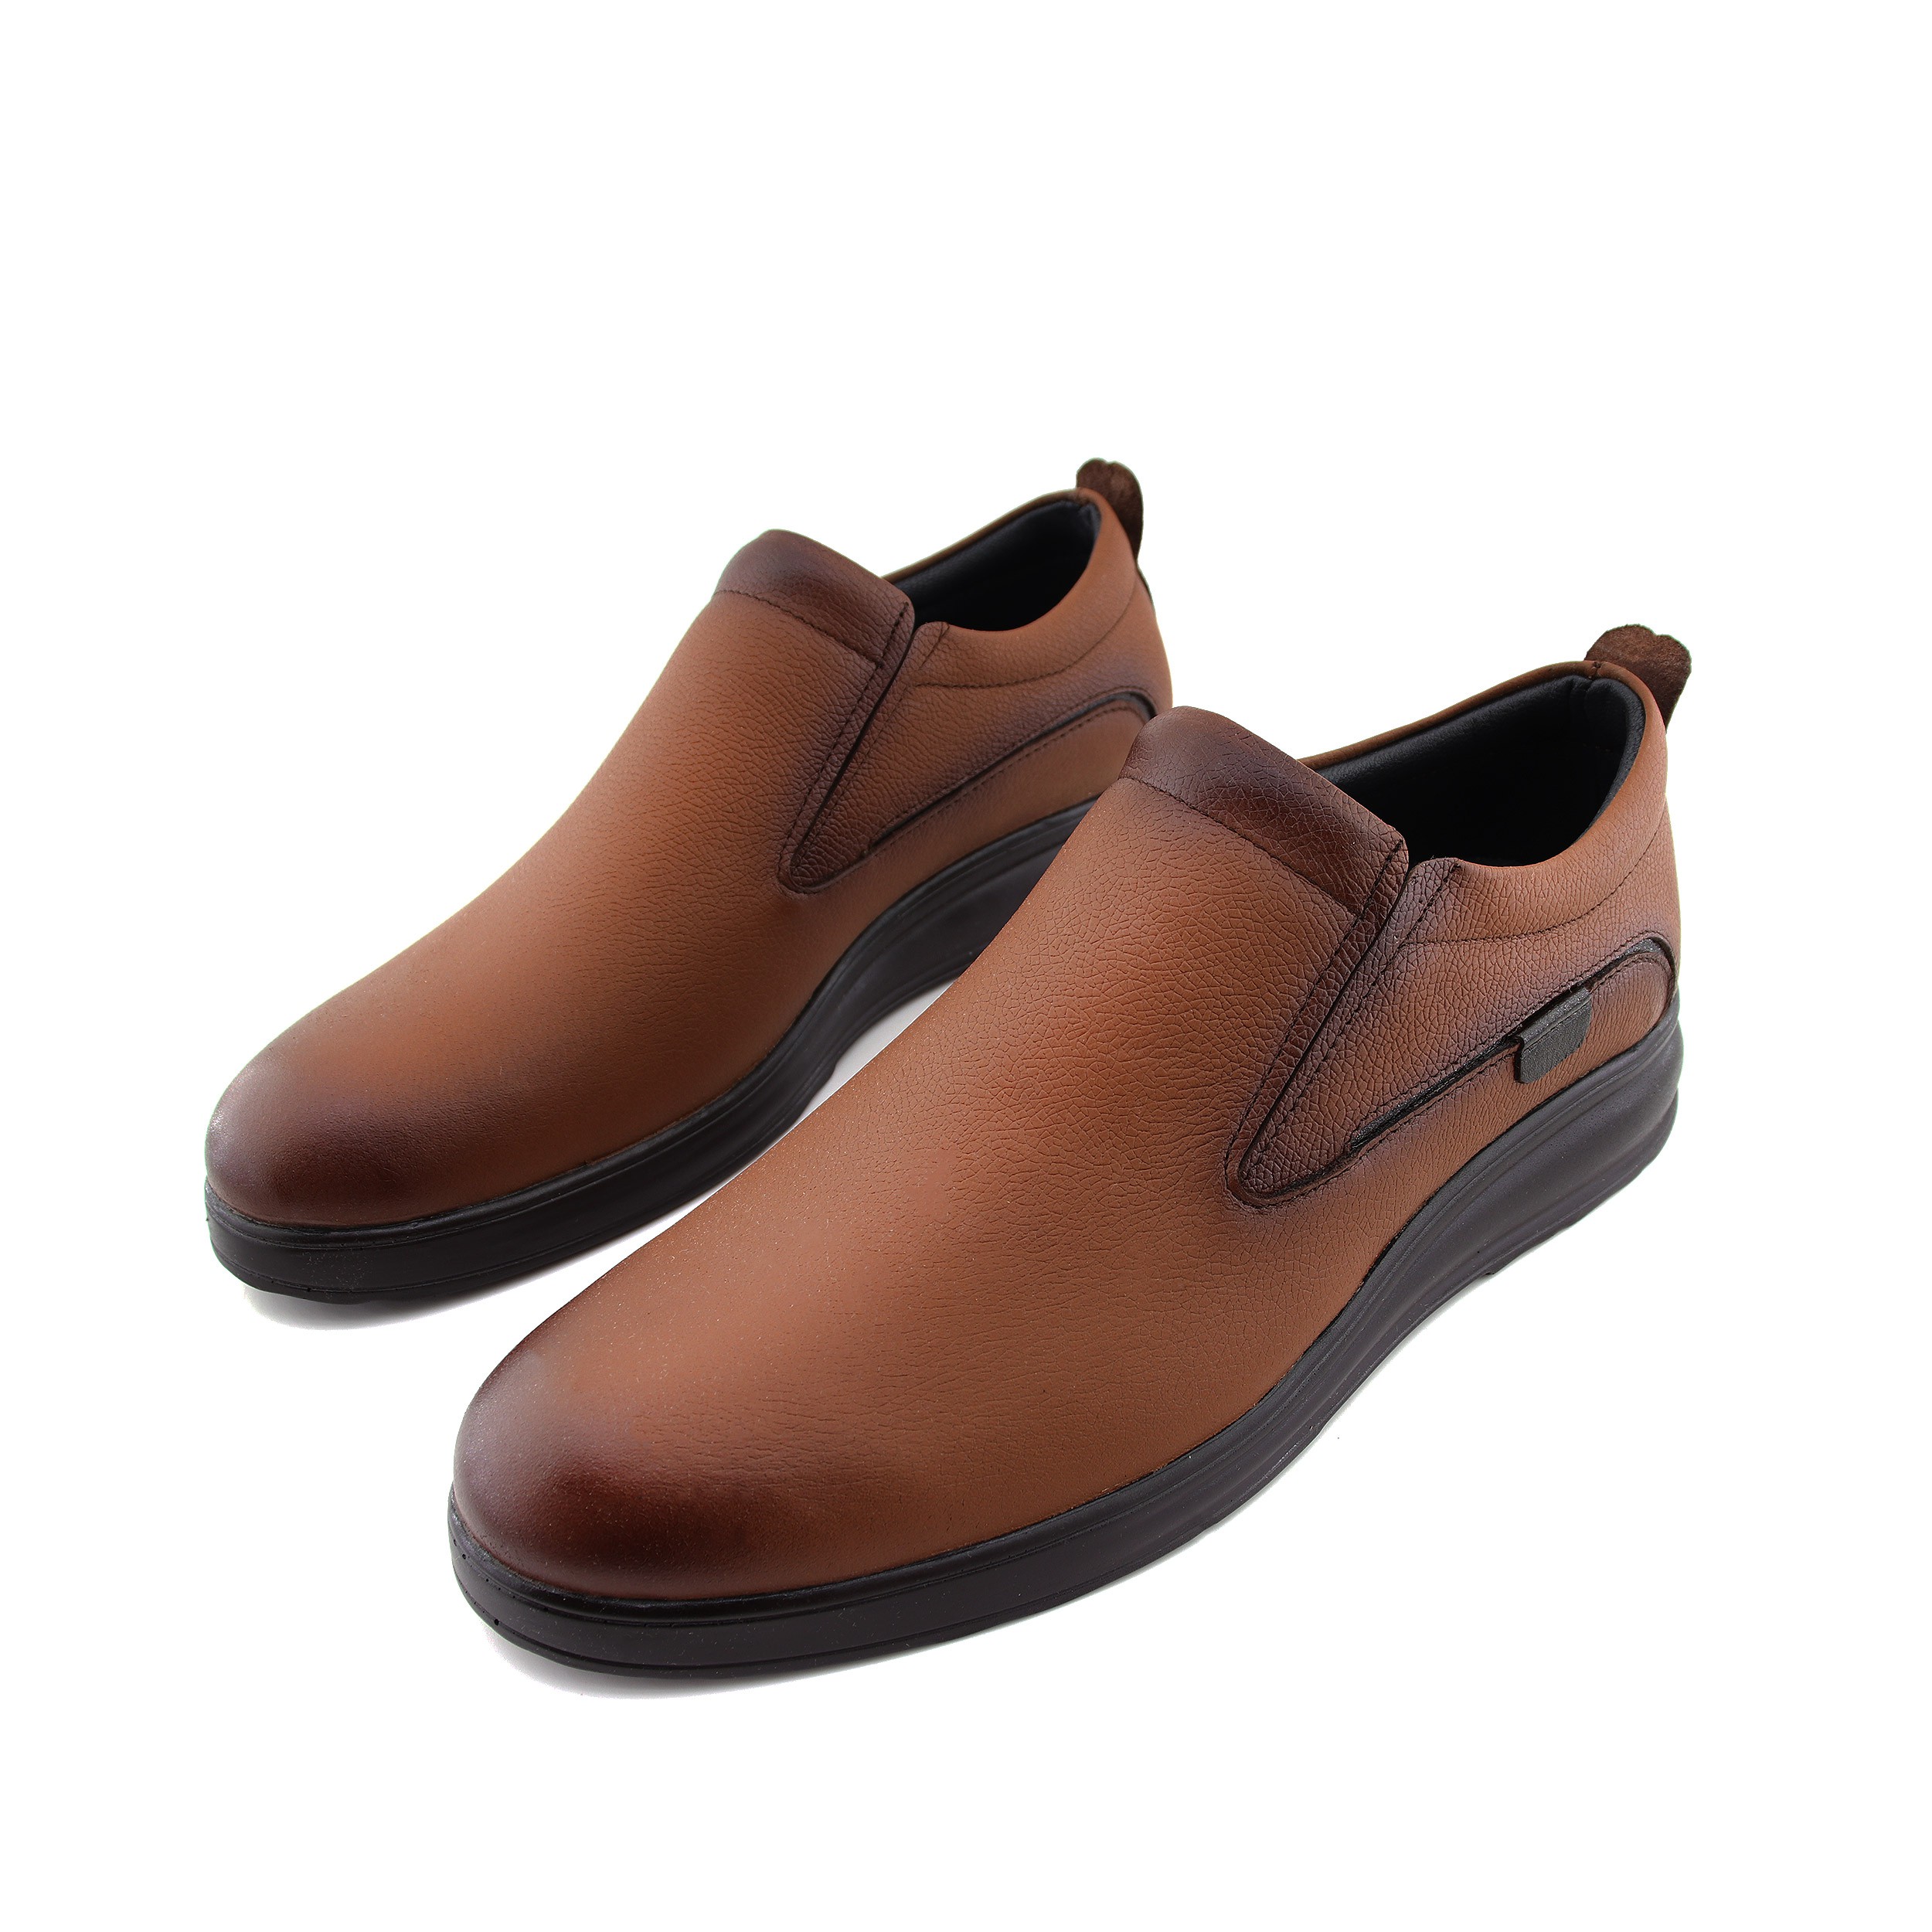 خرید آنلاین کفش طبی مردانه پاتکان مدل s441 کد 15